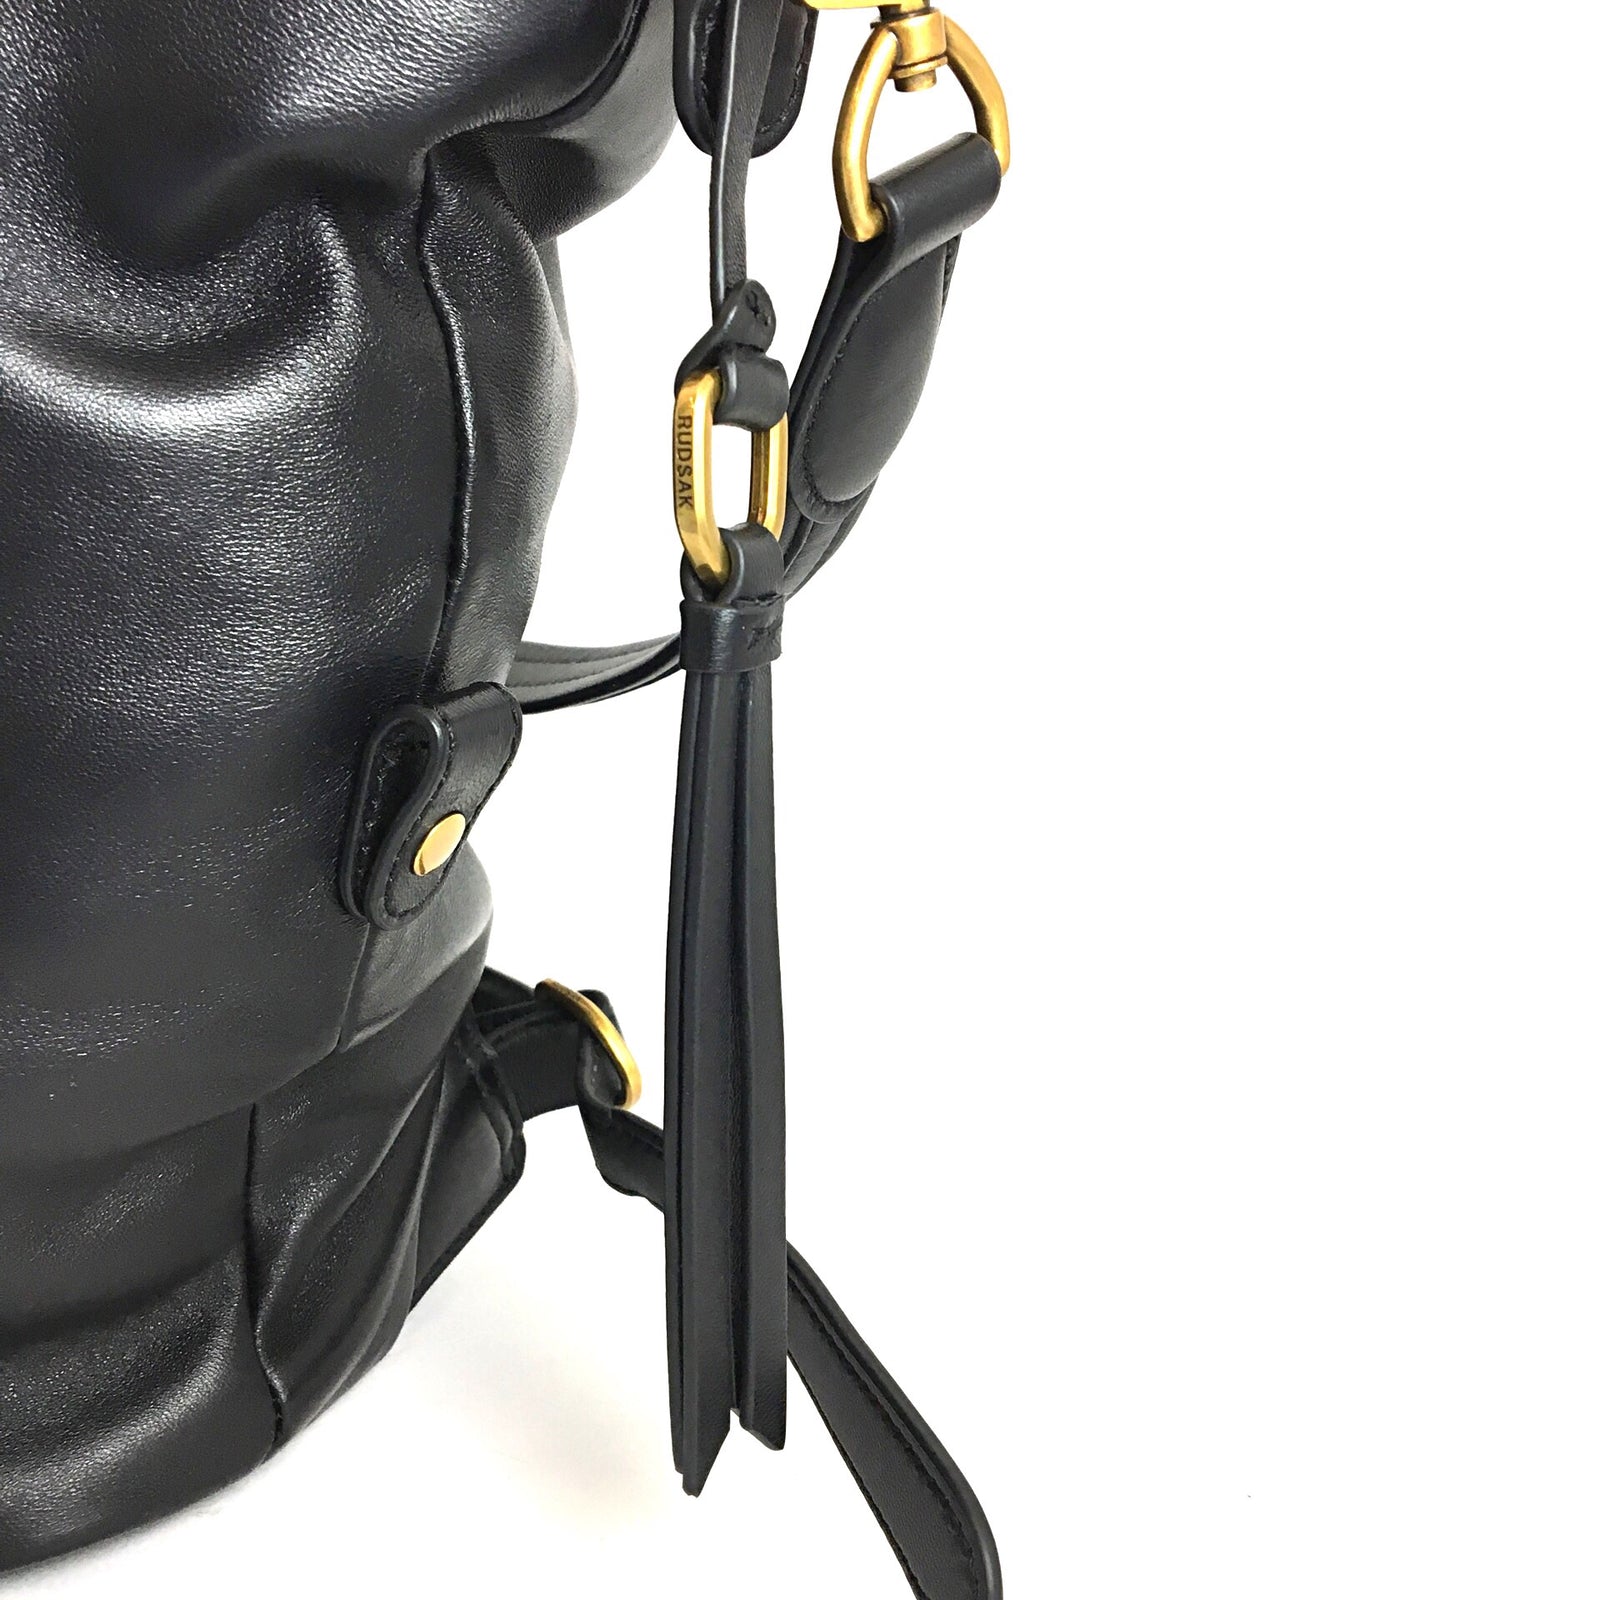 Black Shoulder Bag/Backpack